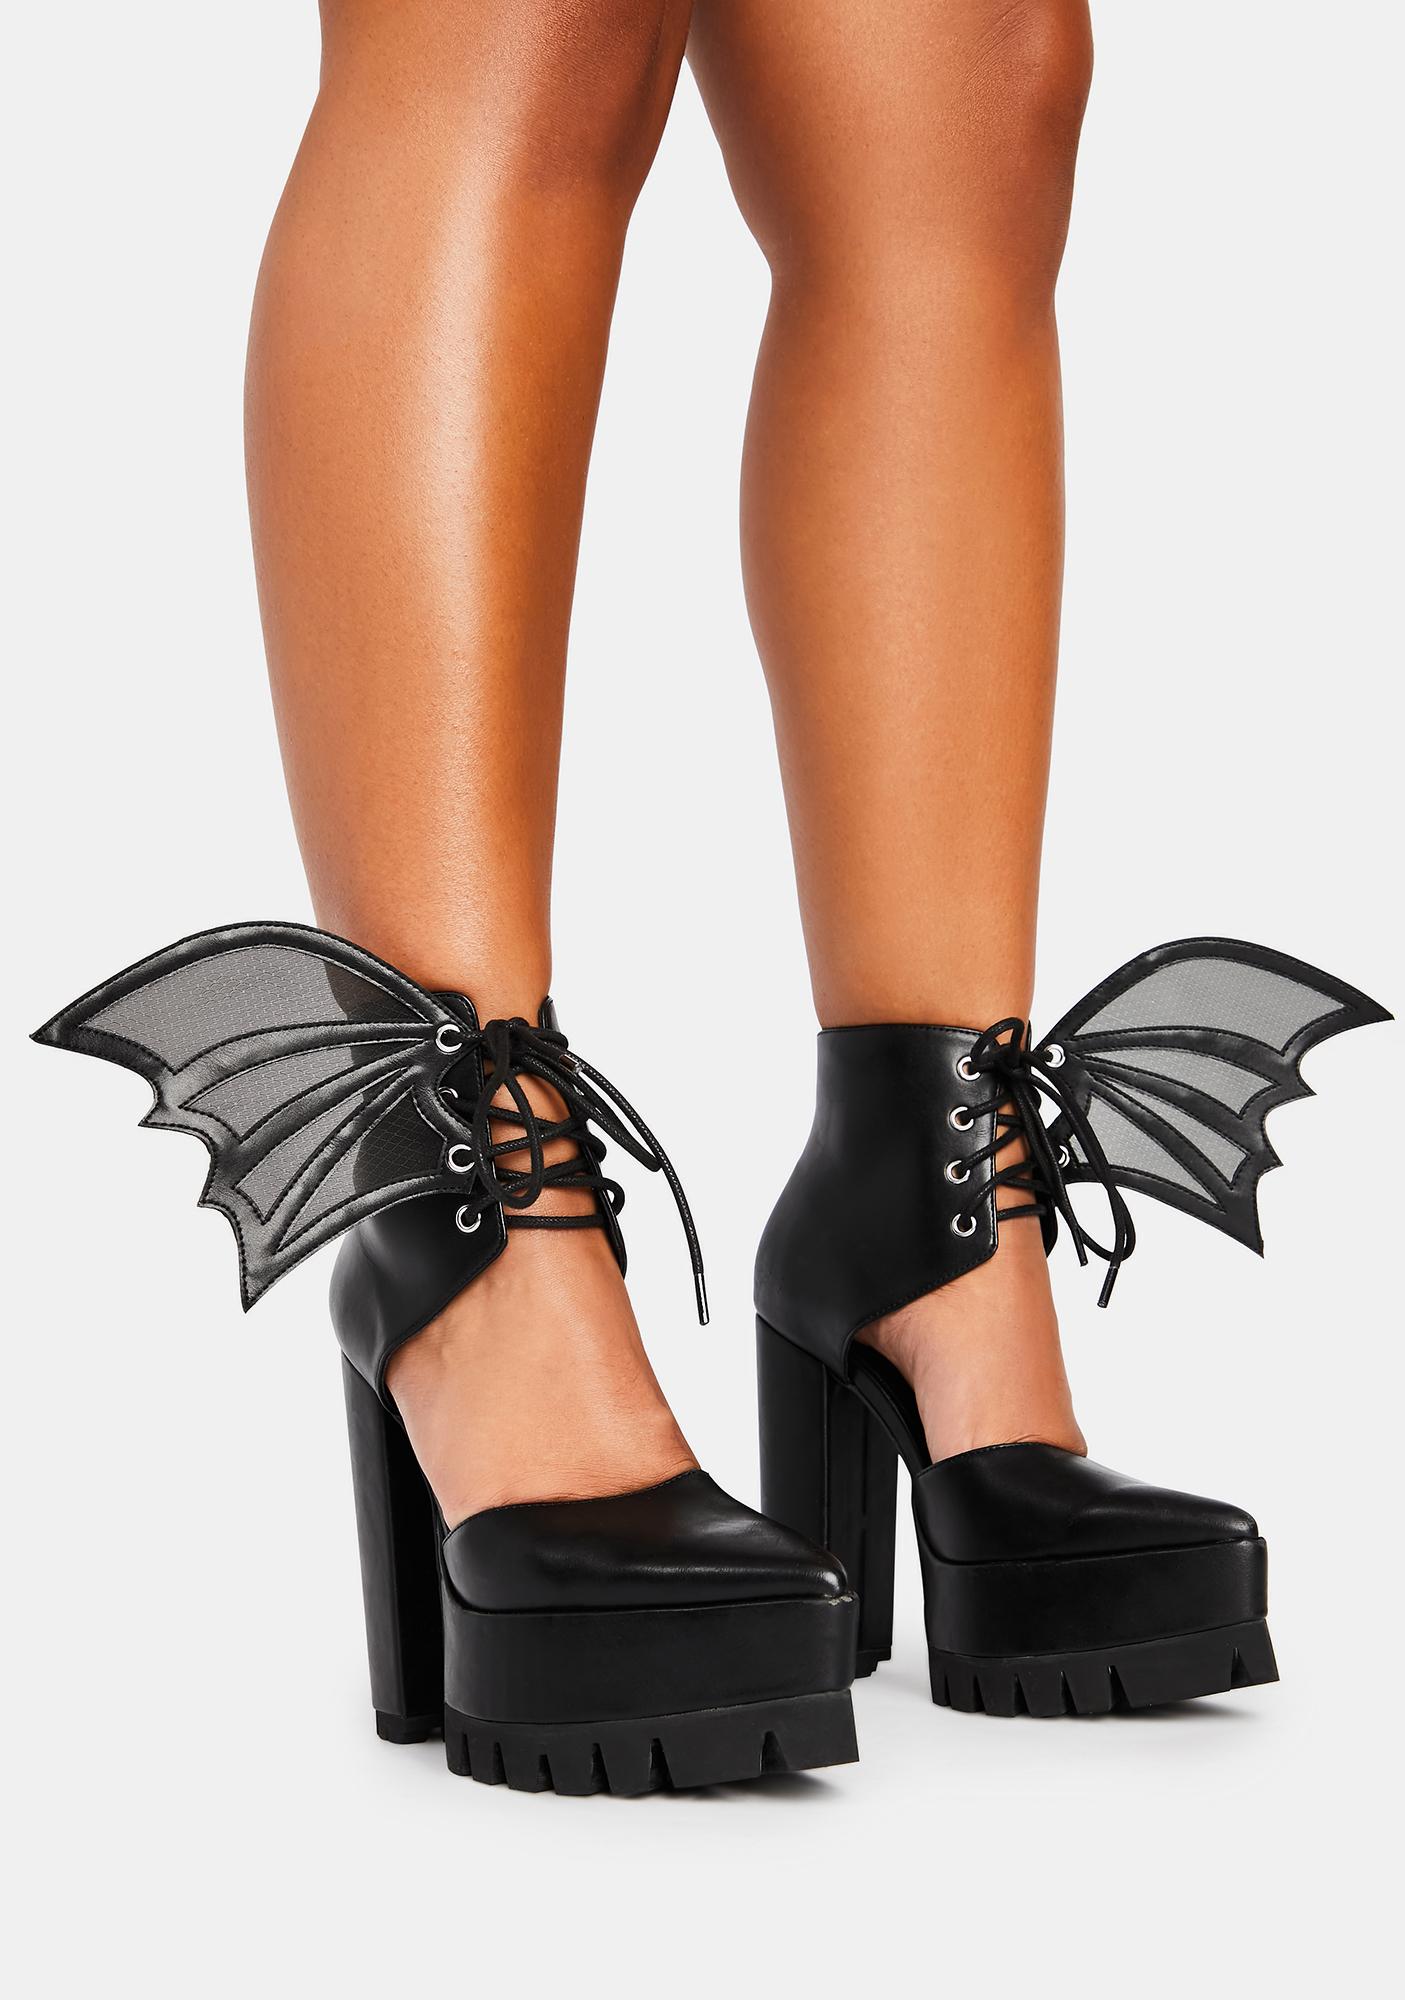 bat wing heels